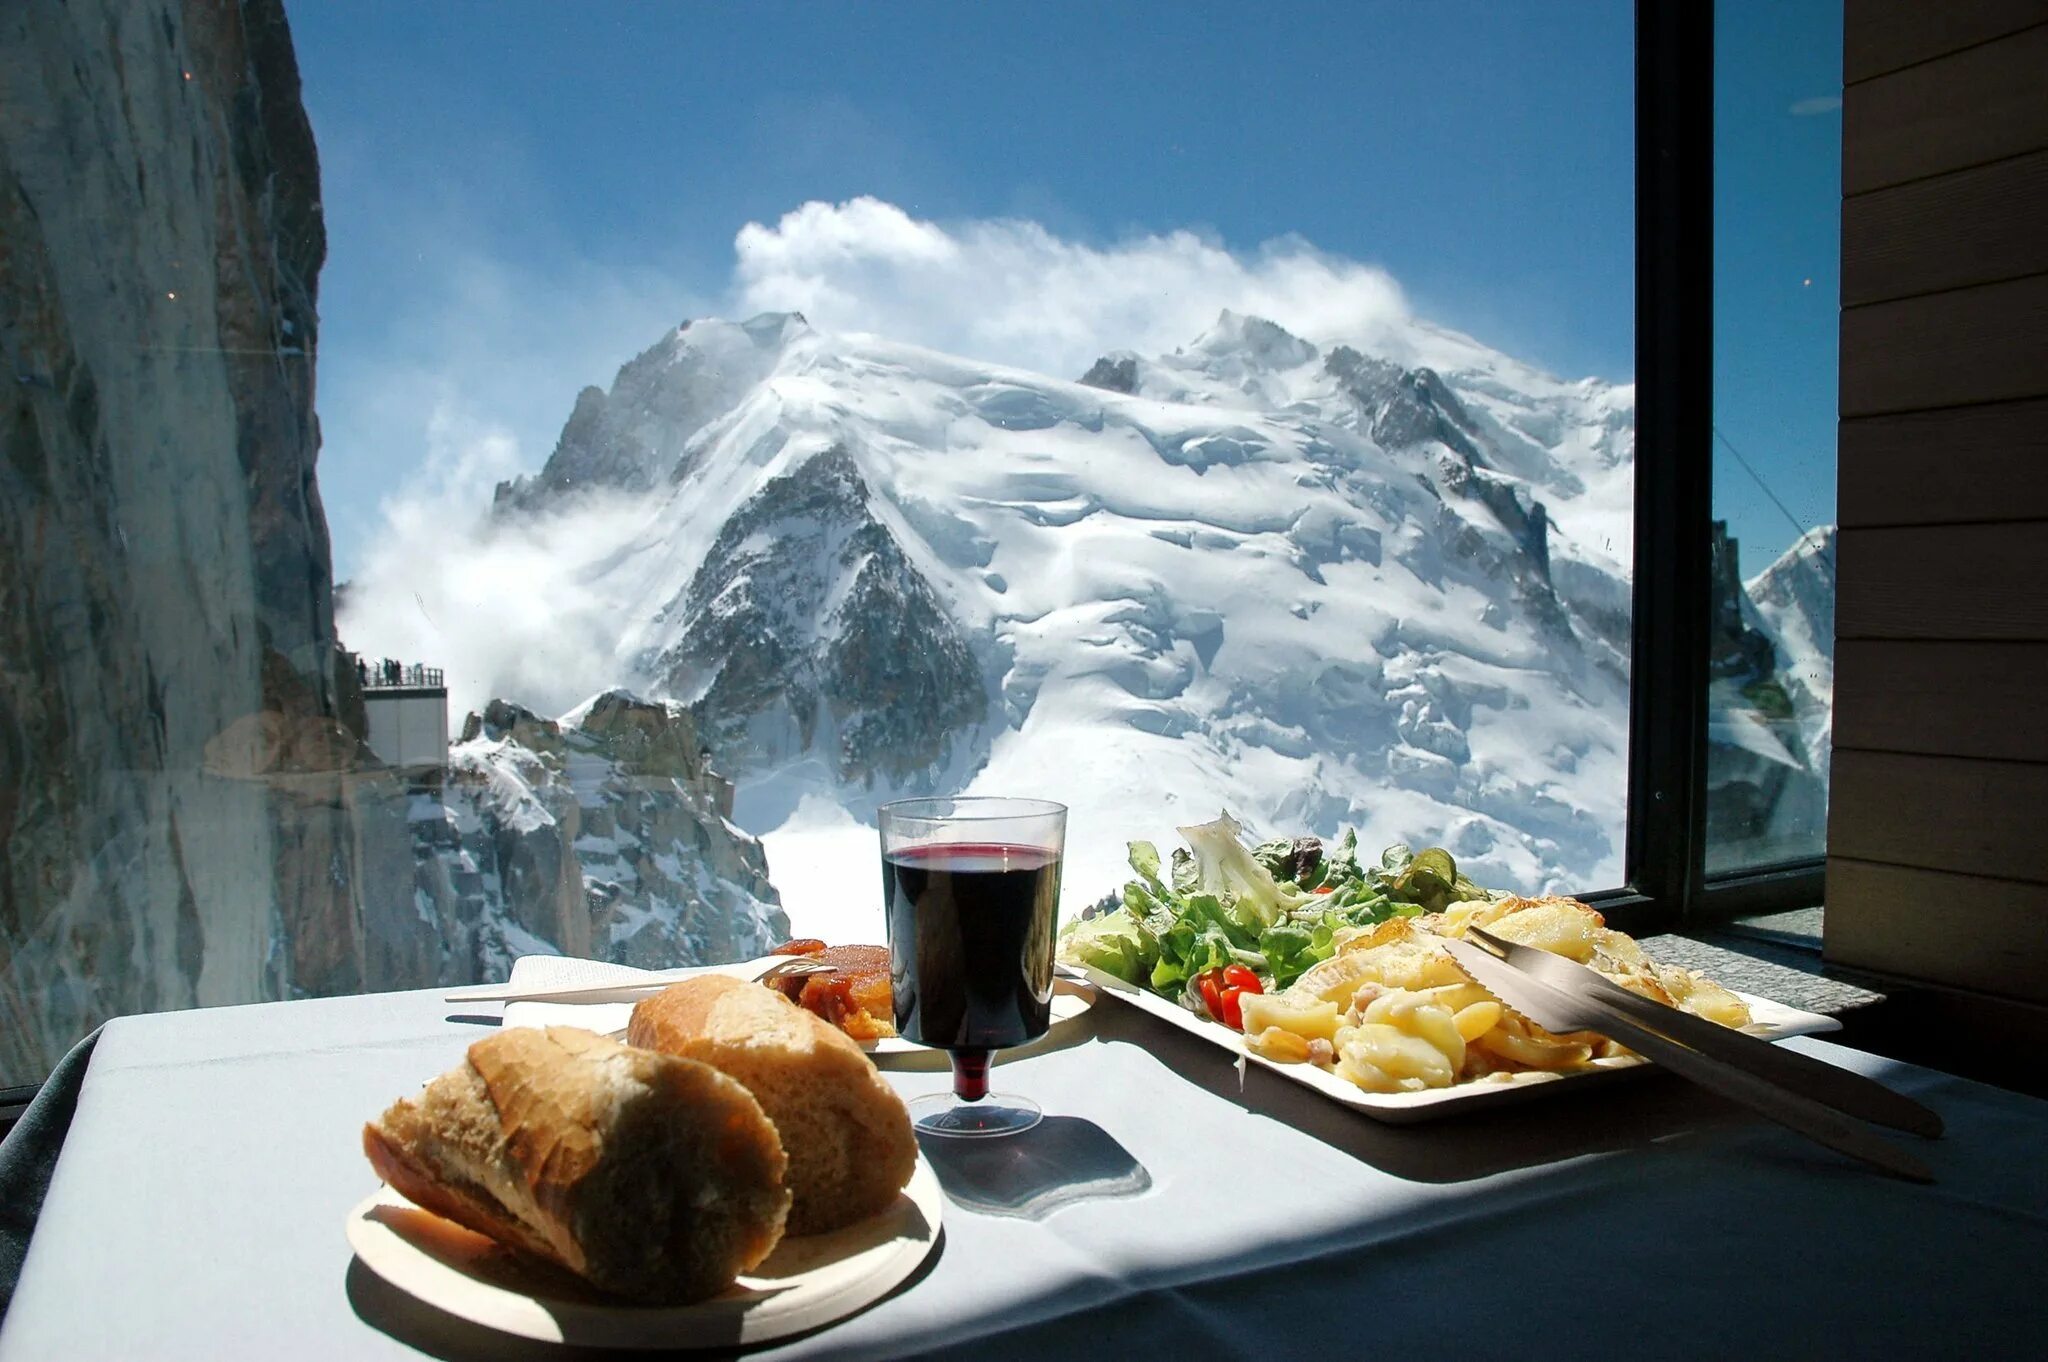 Ресторан на горе Эгюий-дю-миди на высоте 3842 м, Шамони, Франция. Ресторан на горе Эгюий-дю-миди. Эгюий-дю-миди, Шамони, Франция. Ресторан на горе Эгюий-дю-миди Шамони Франция. Завтраки красная поляна